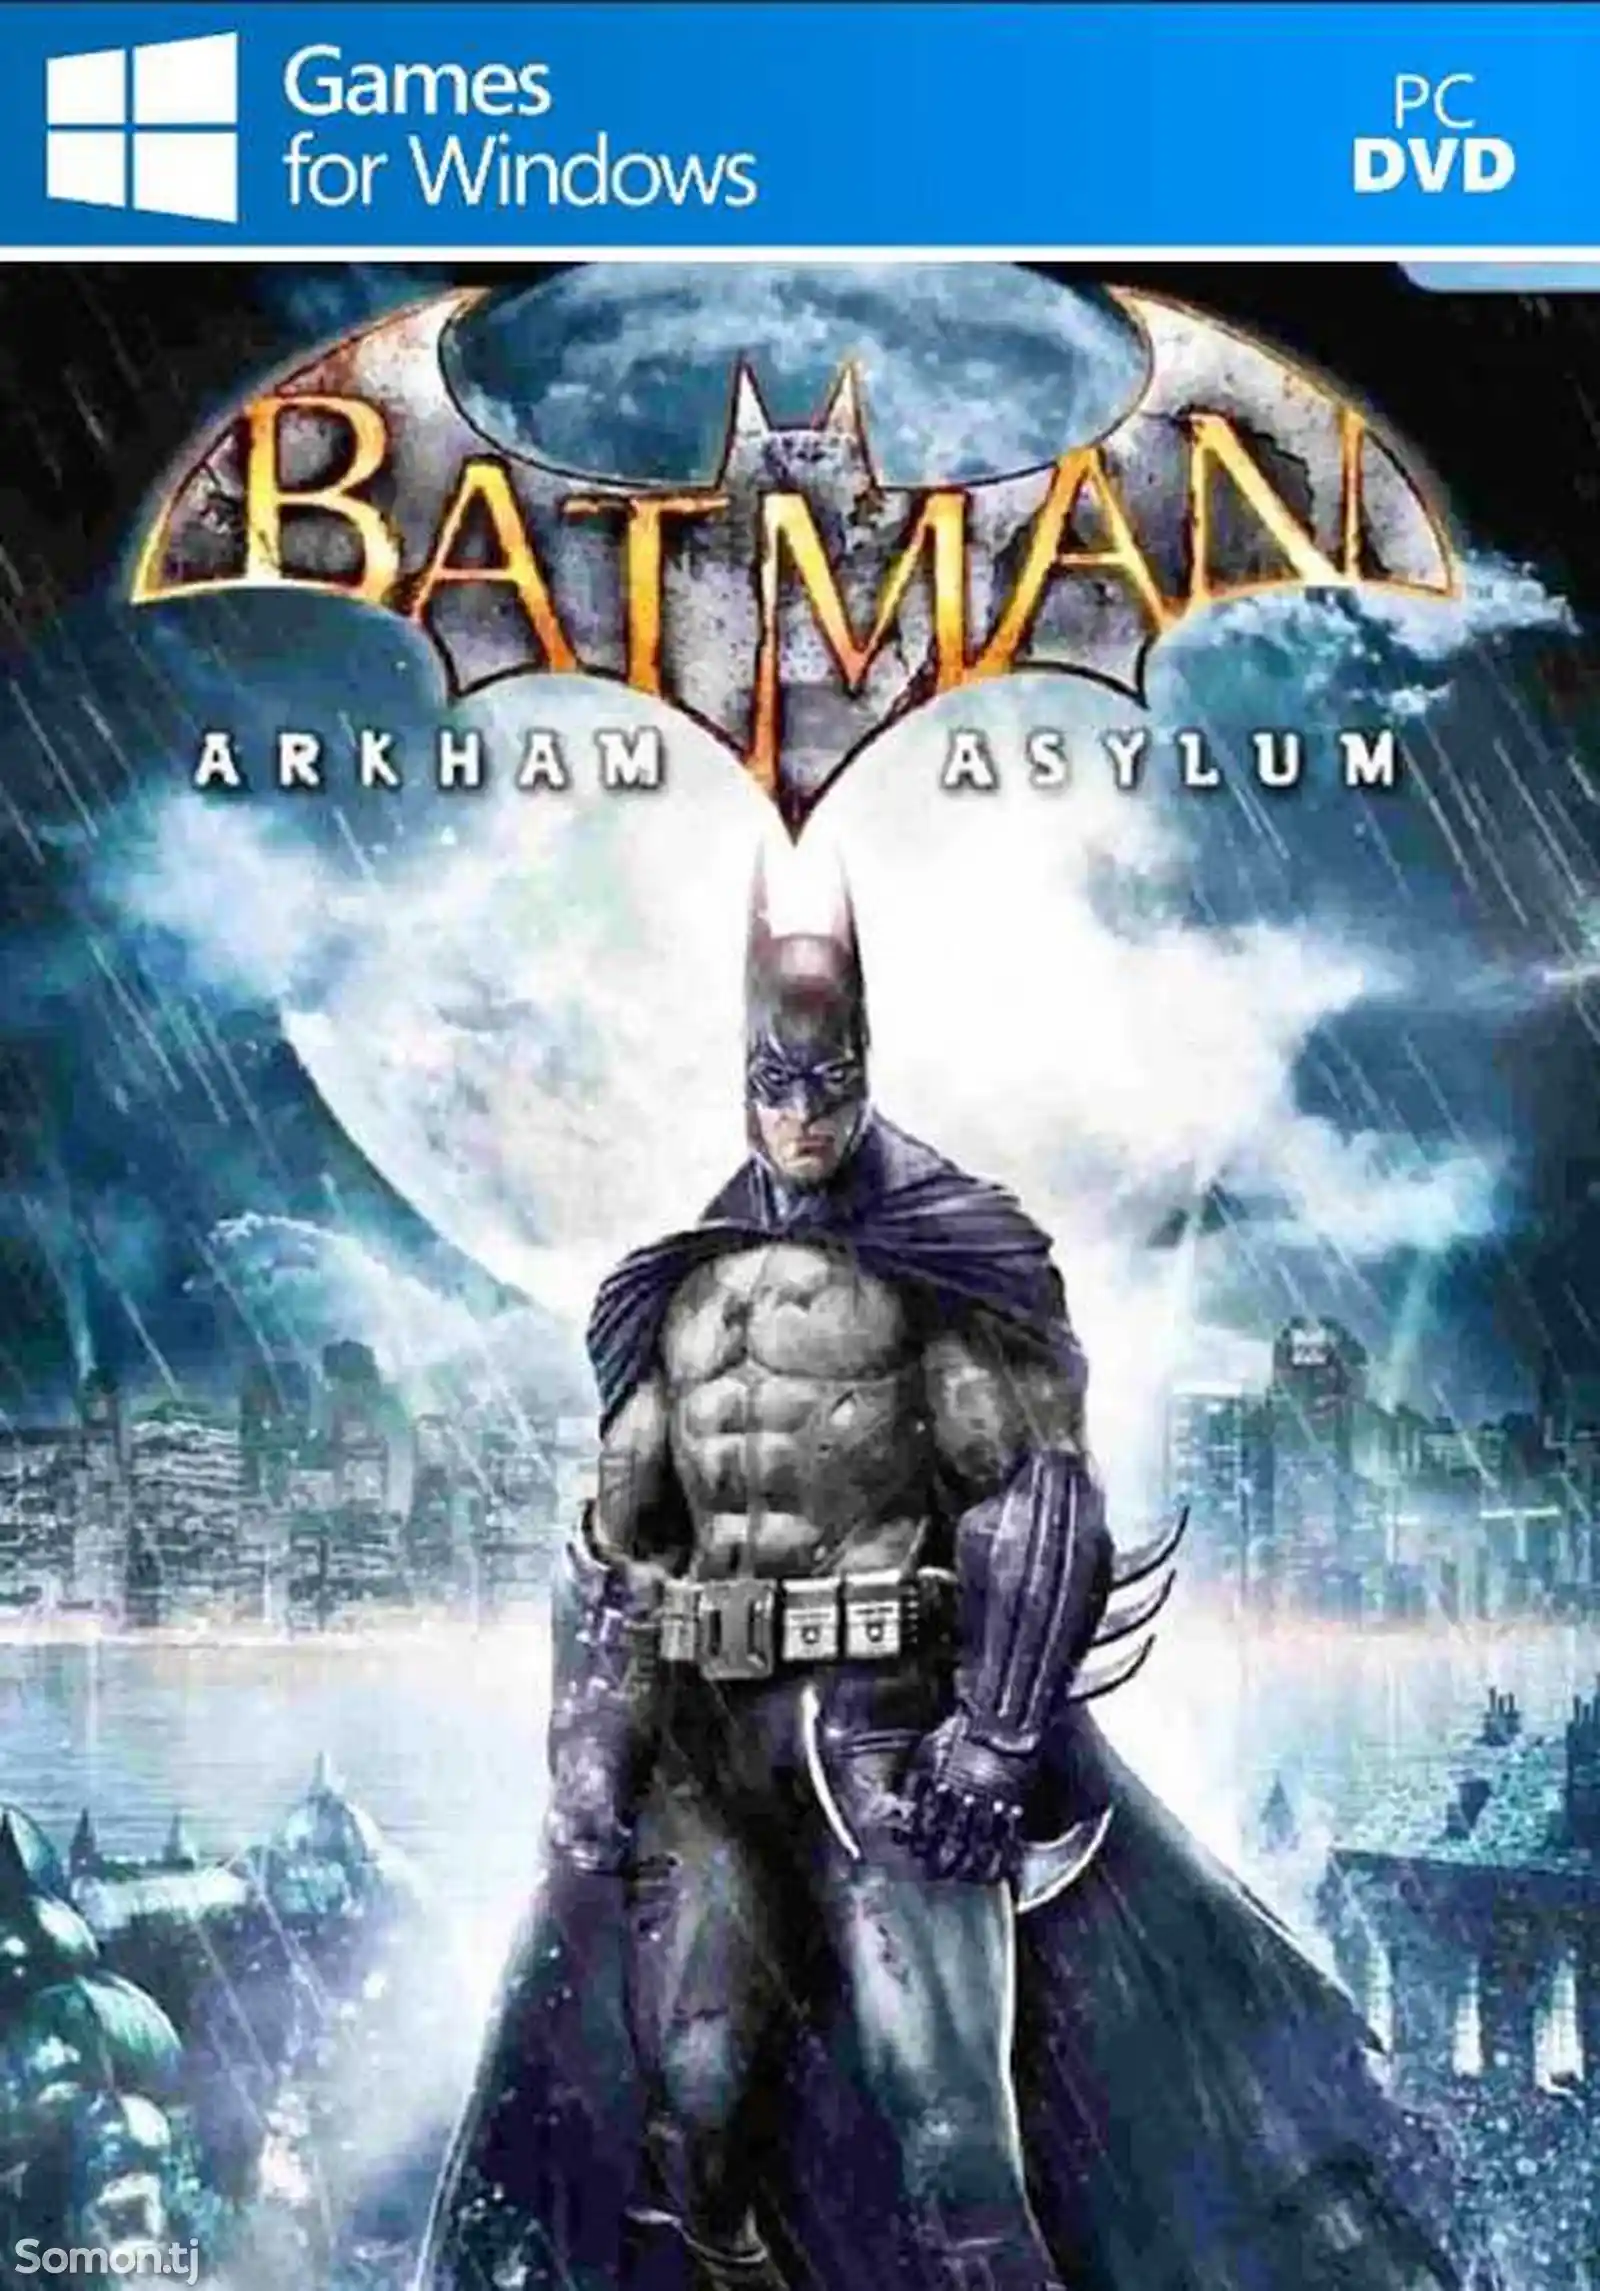 Игра Batman arkham asylum для компьютера-пк-pc-1